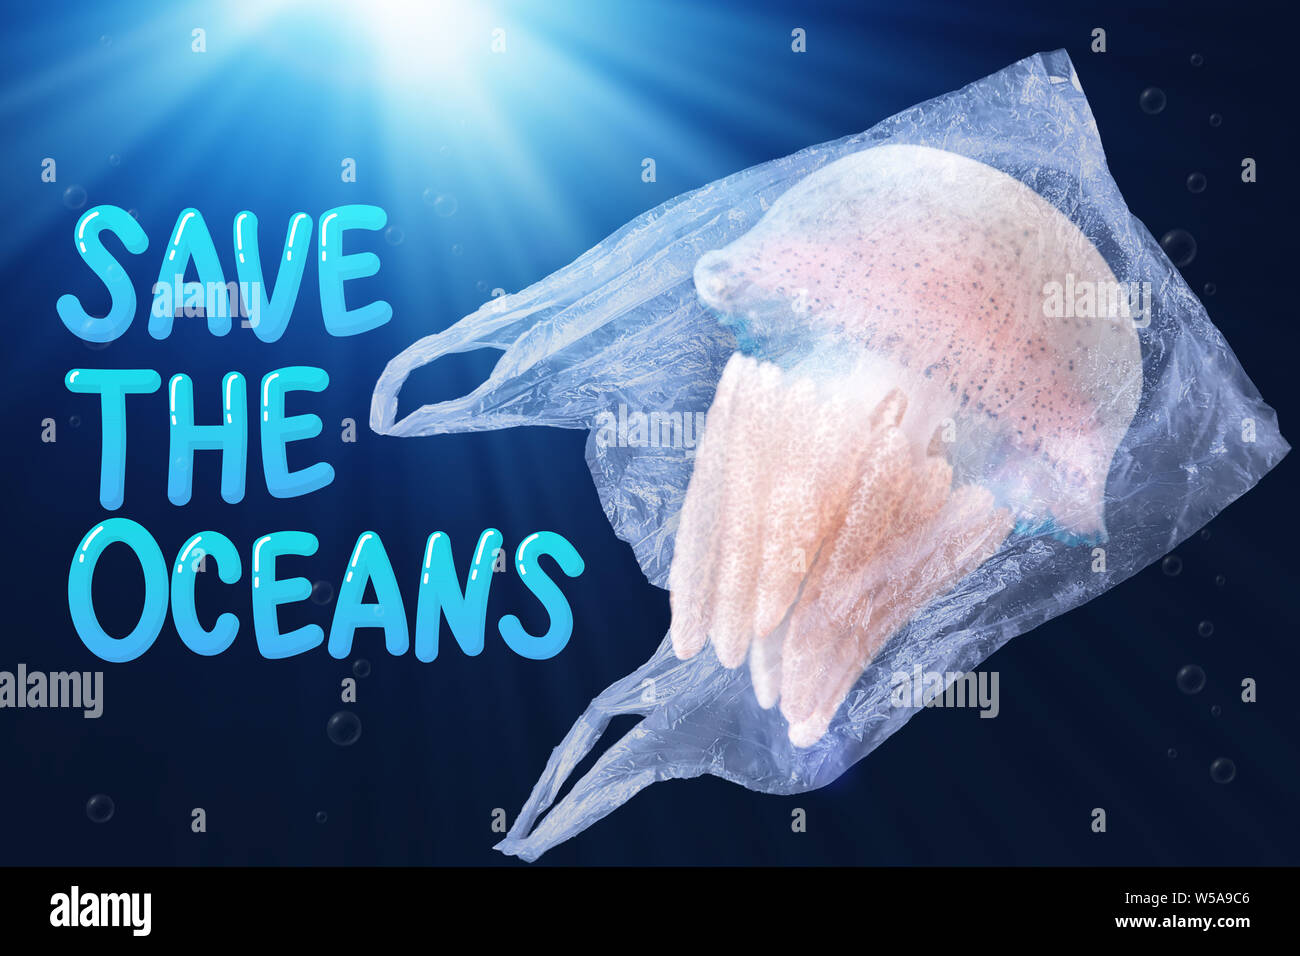 La contaminación de plástico en el océano problema ambiental concepto. medusas nadar dentro de una bolsa de plástico flotando en el océano con texto guardar los océanos Foto de stock